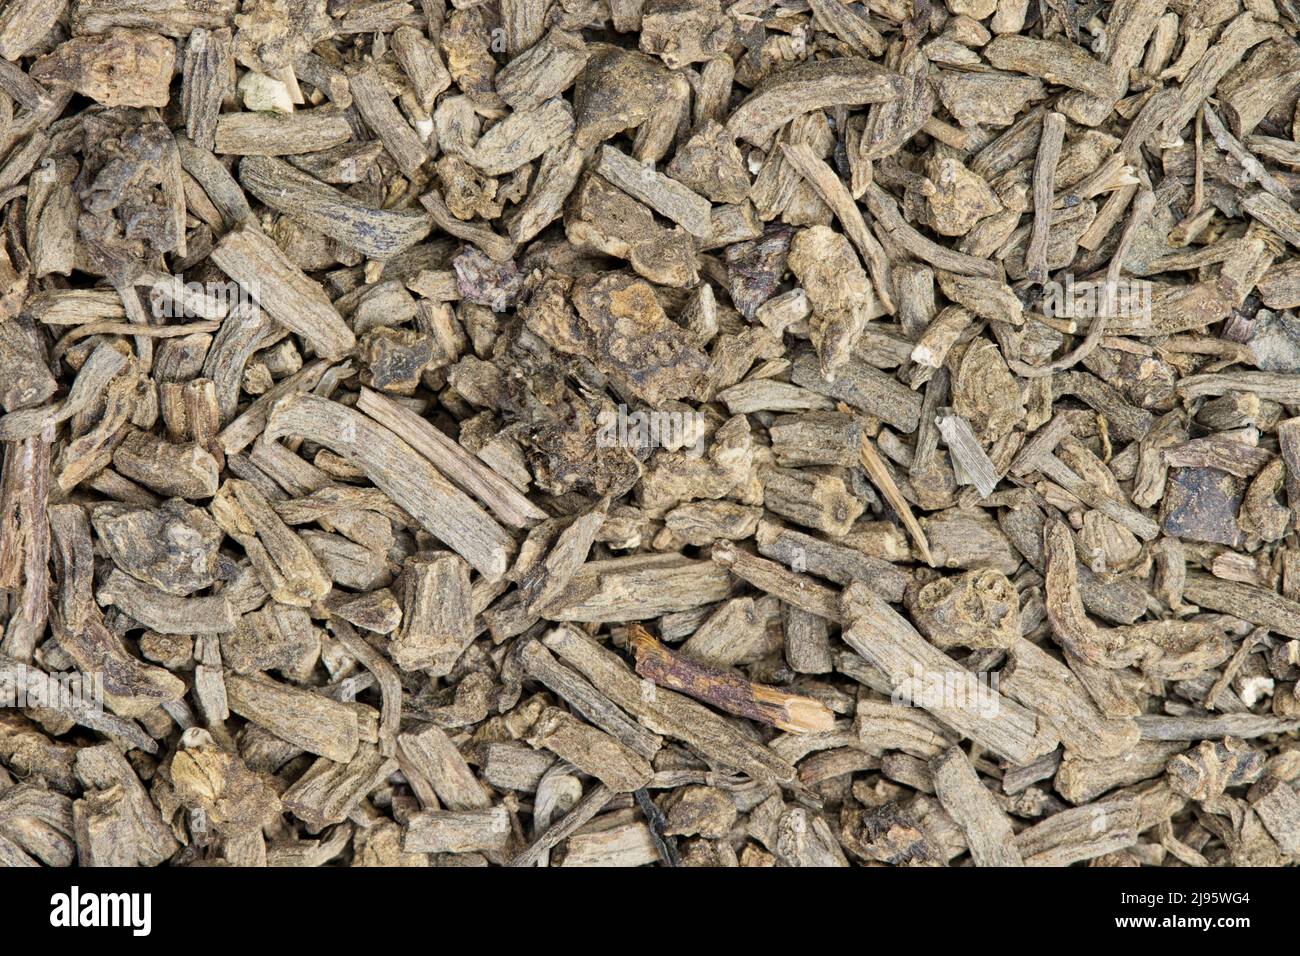 Raíz de Valeriana seca (Valeriana officinalis), imagen de fondo de primer plano. La hierba medicinal tradicional también se utiliza como atrayente del gato. Foto de stock